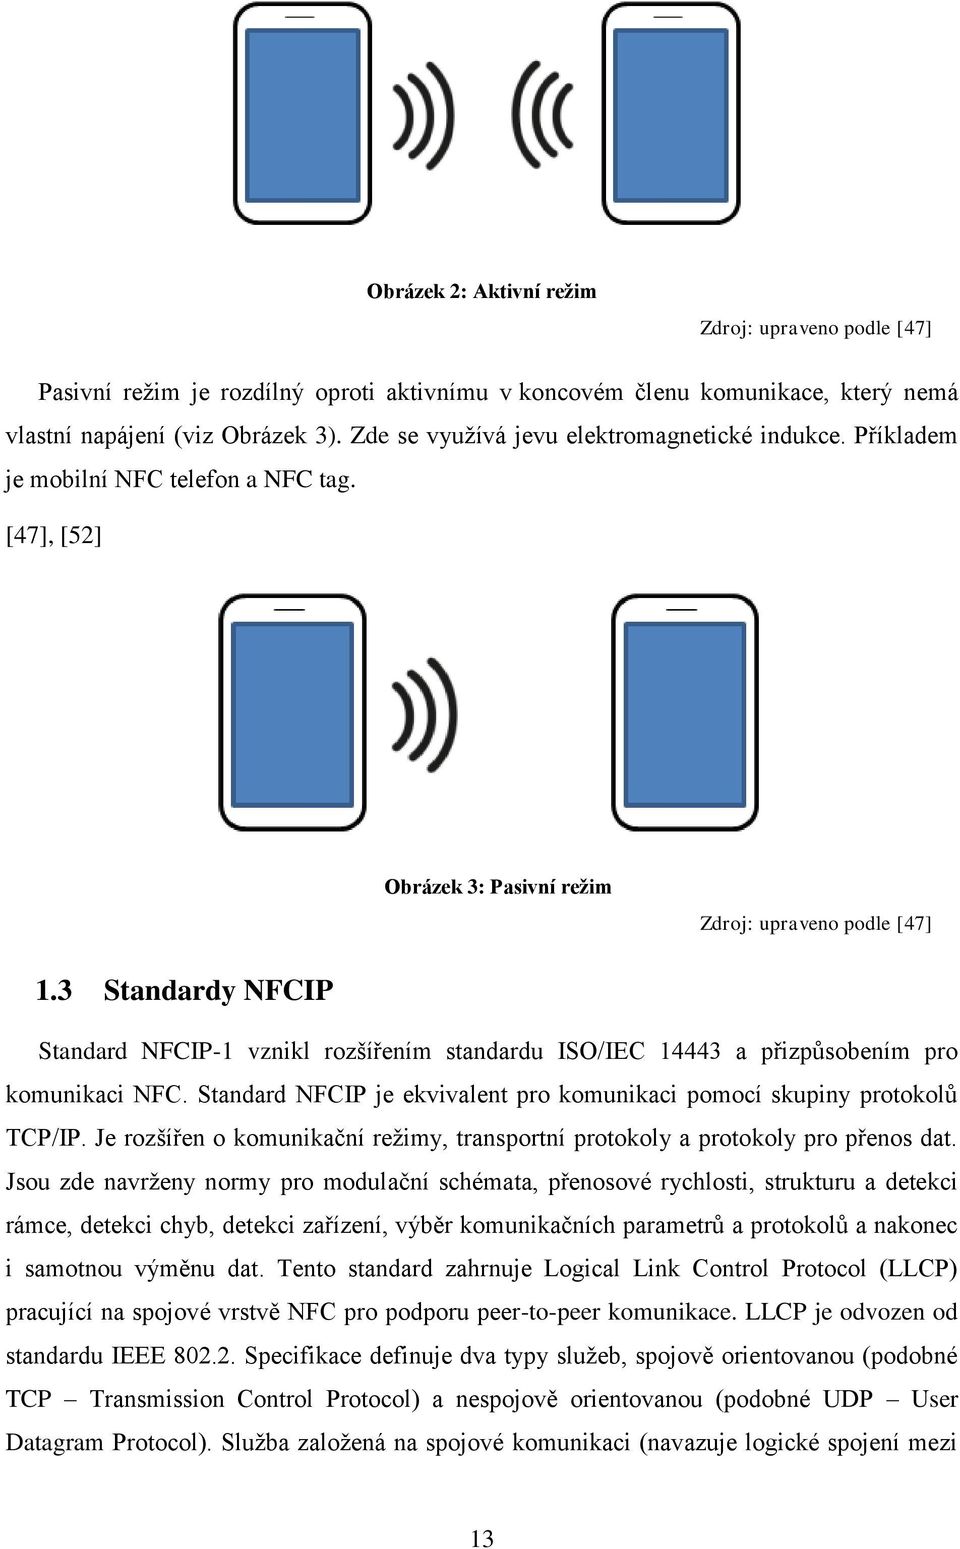 3 Standardy NFCIP Standard NFCIP-1 vznikl rozšířením standardu ISO/IEC 14443 a přizpůsobením pro komunikaci NFC. Standard NFCIP je ekvivalent pro komunikaci pomocí skupiny protokolů TCP/IP.